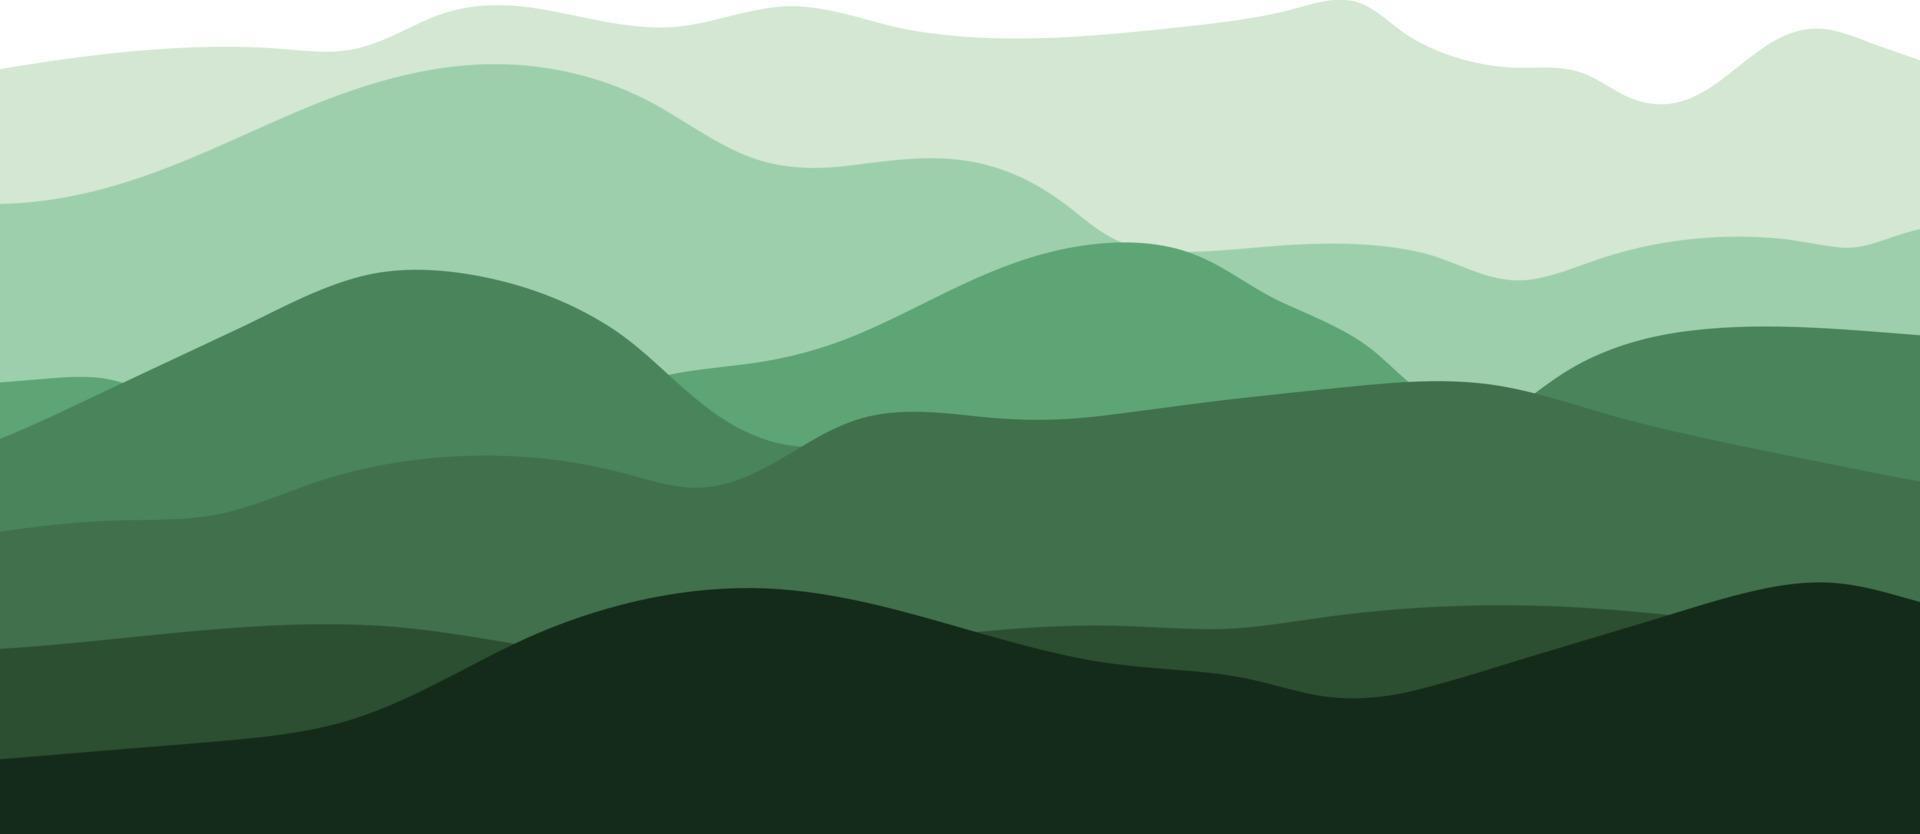 montanhas, vetor. ilustração com silhueta de montanhas em verde sobre fundo branco. vetor